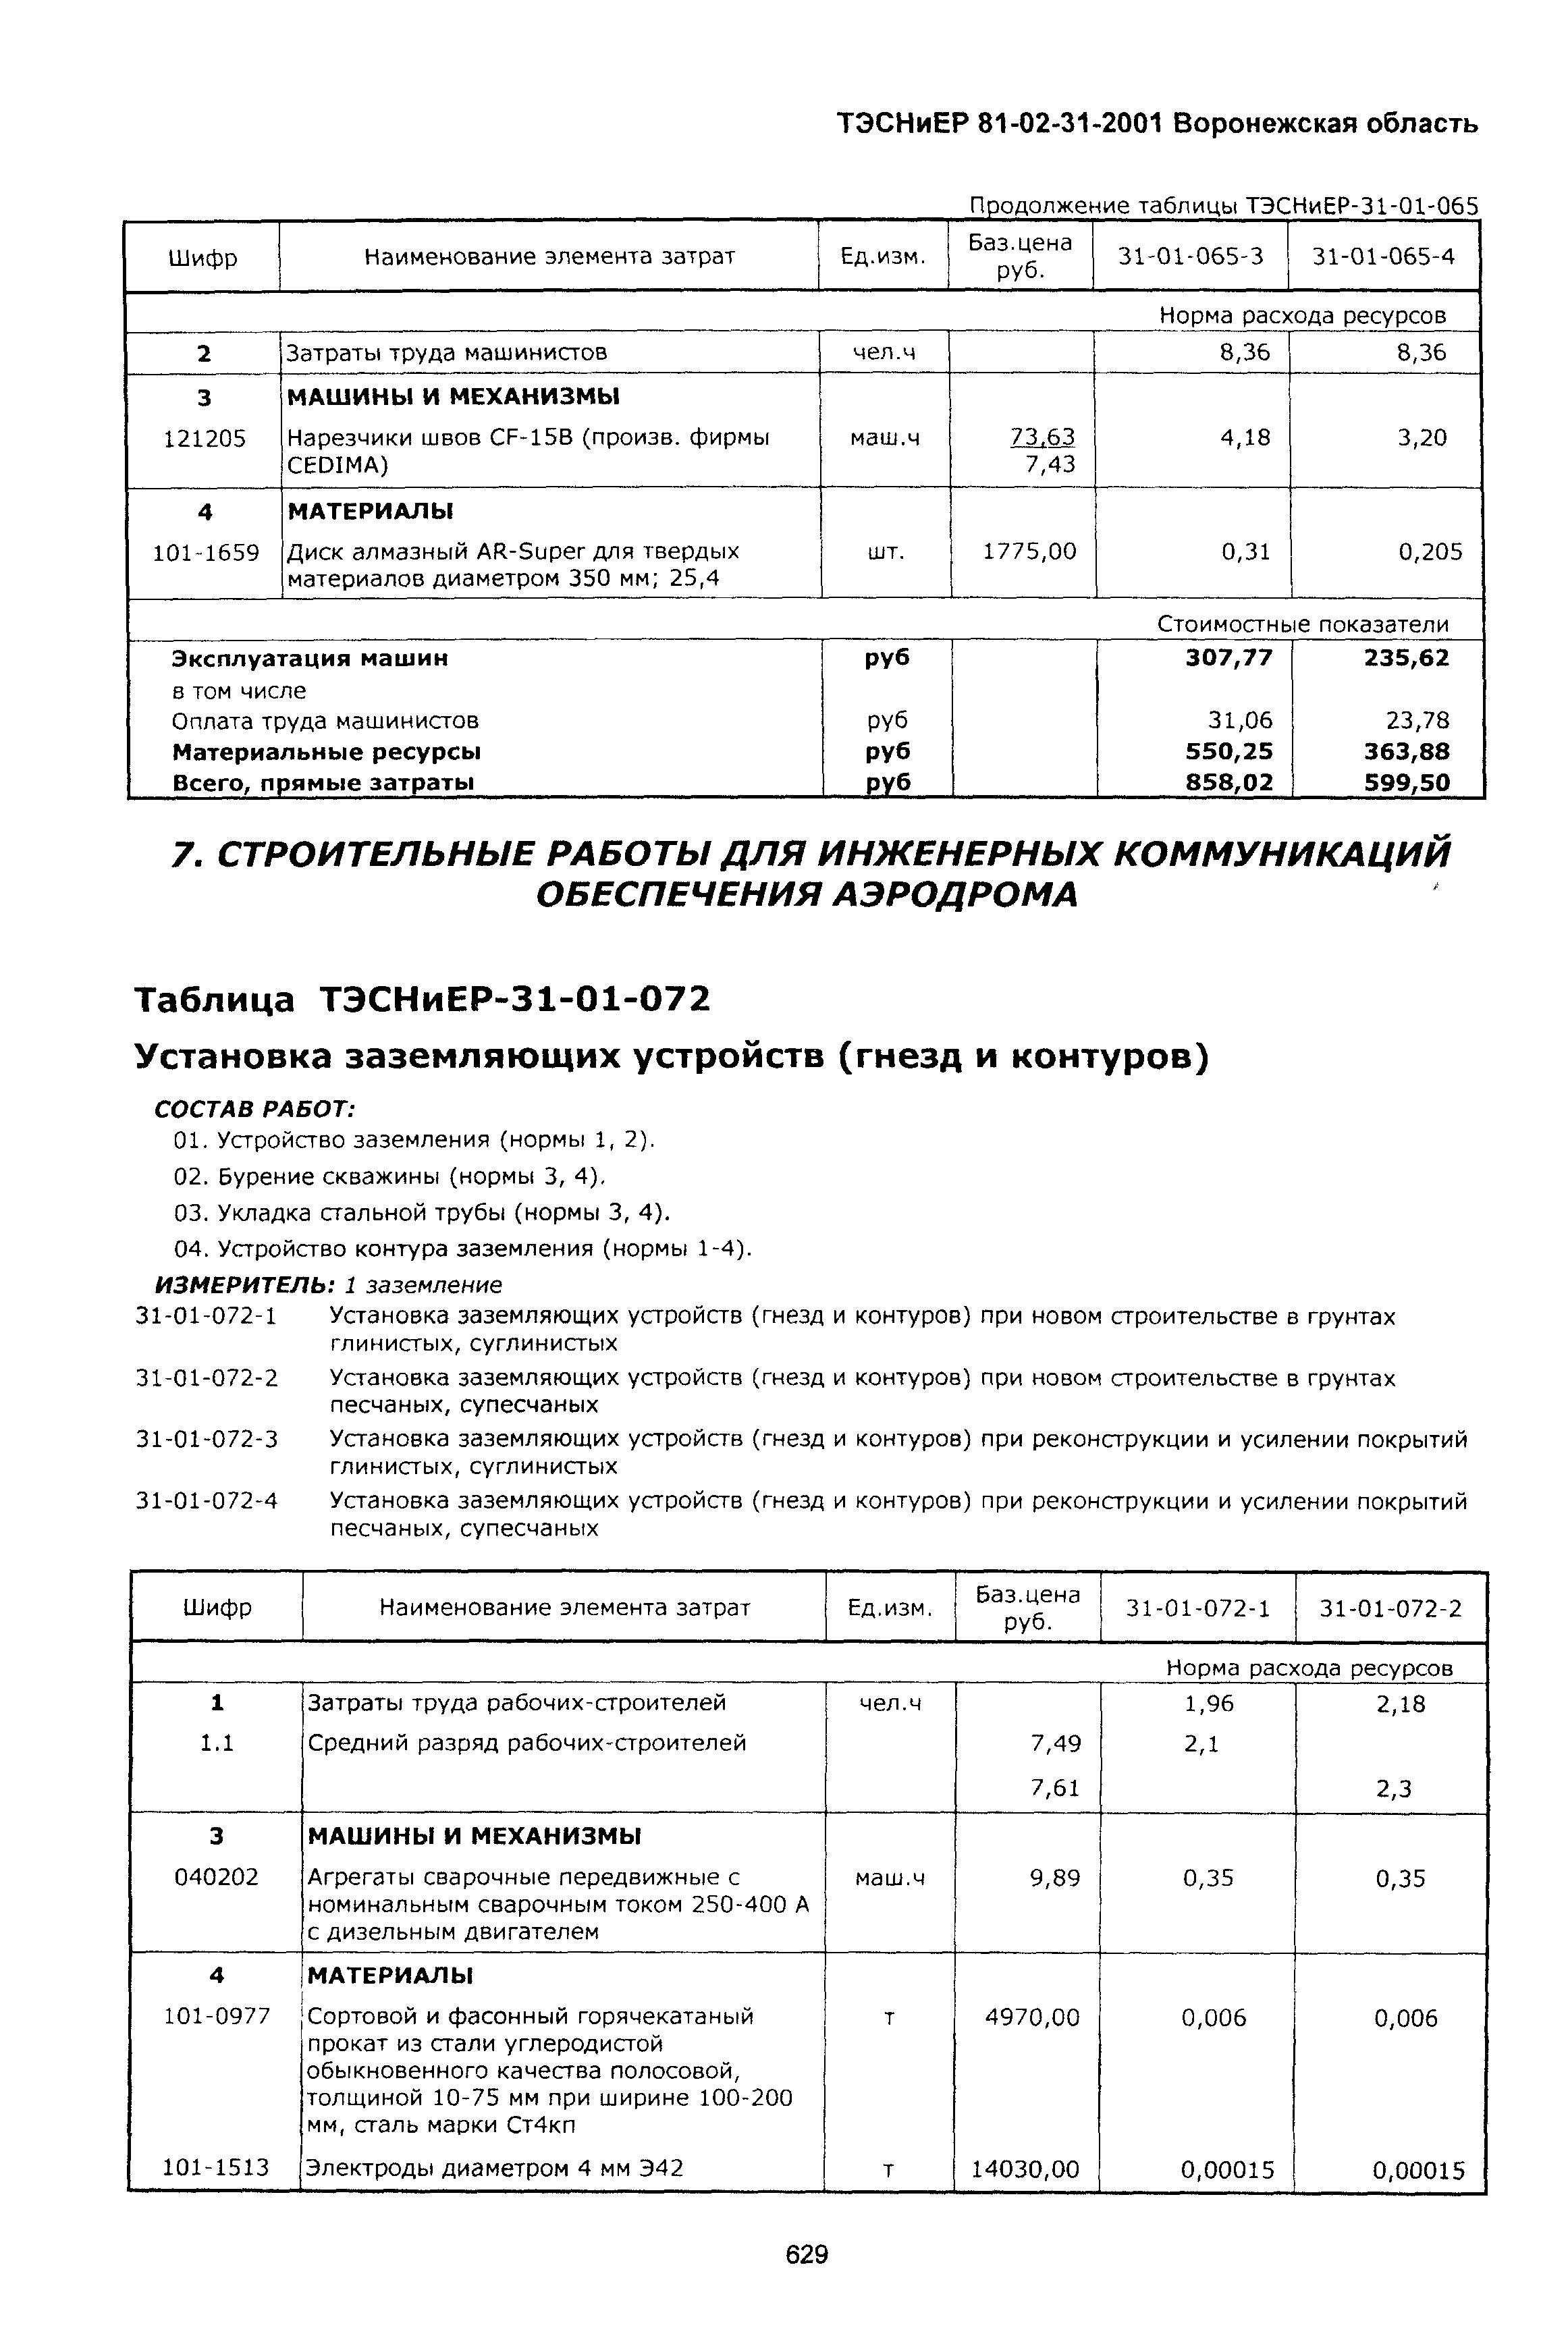 ТЭСНиЕР Воронежской области 81-02-31-2001